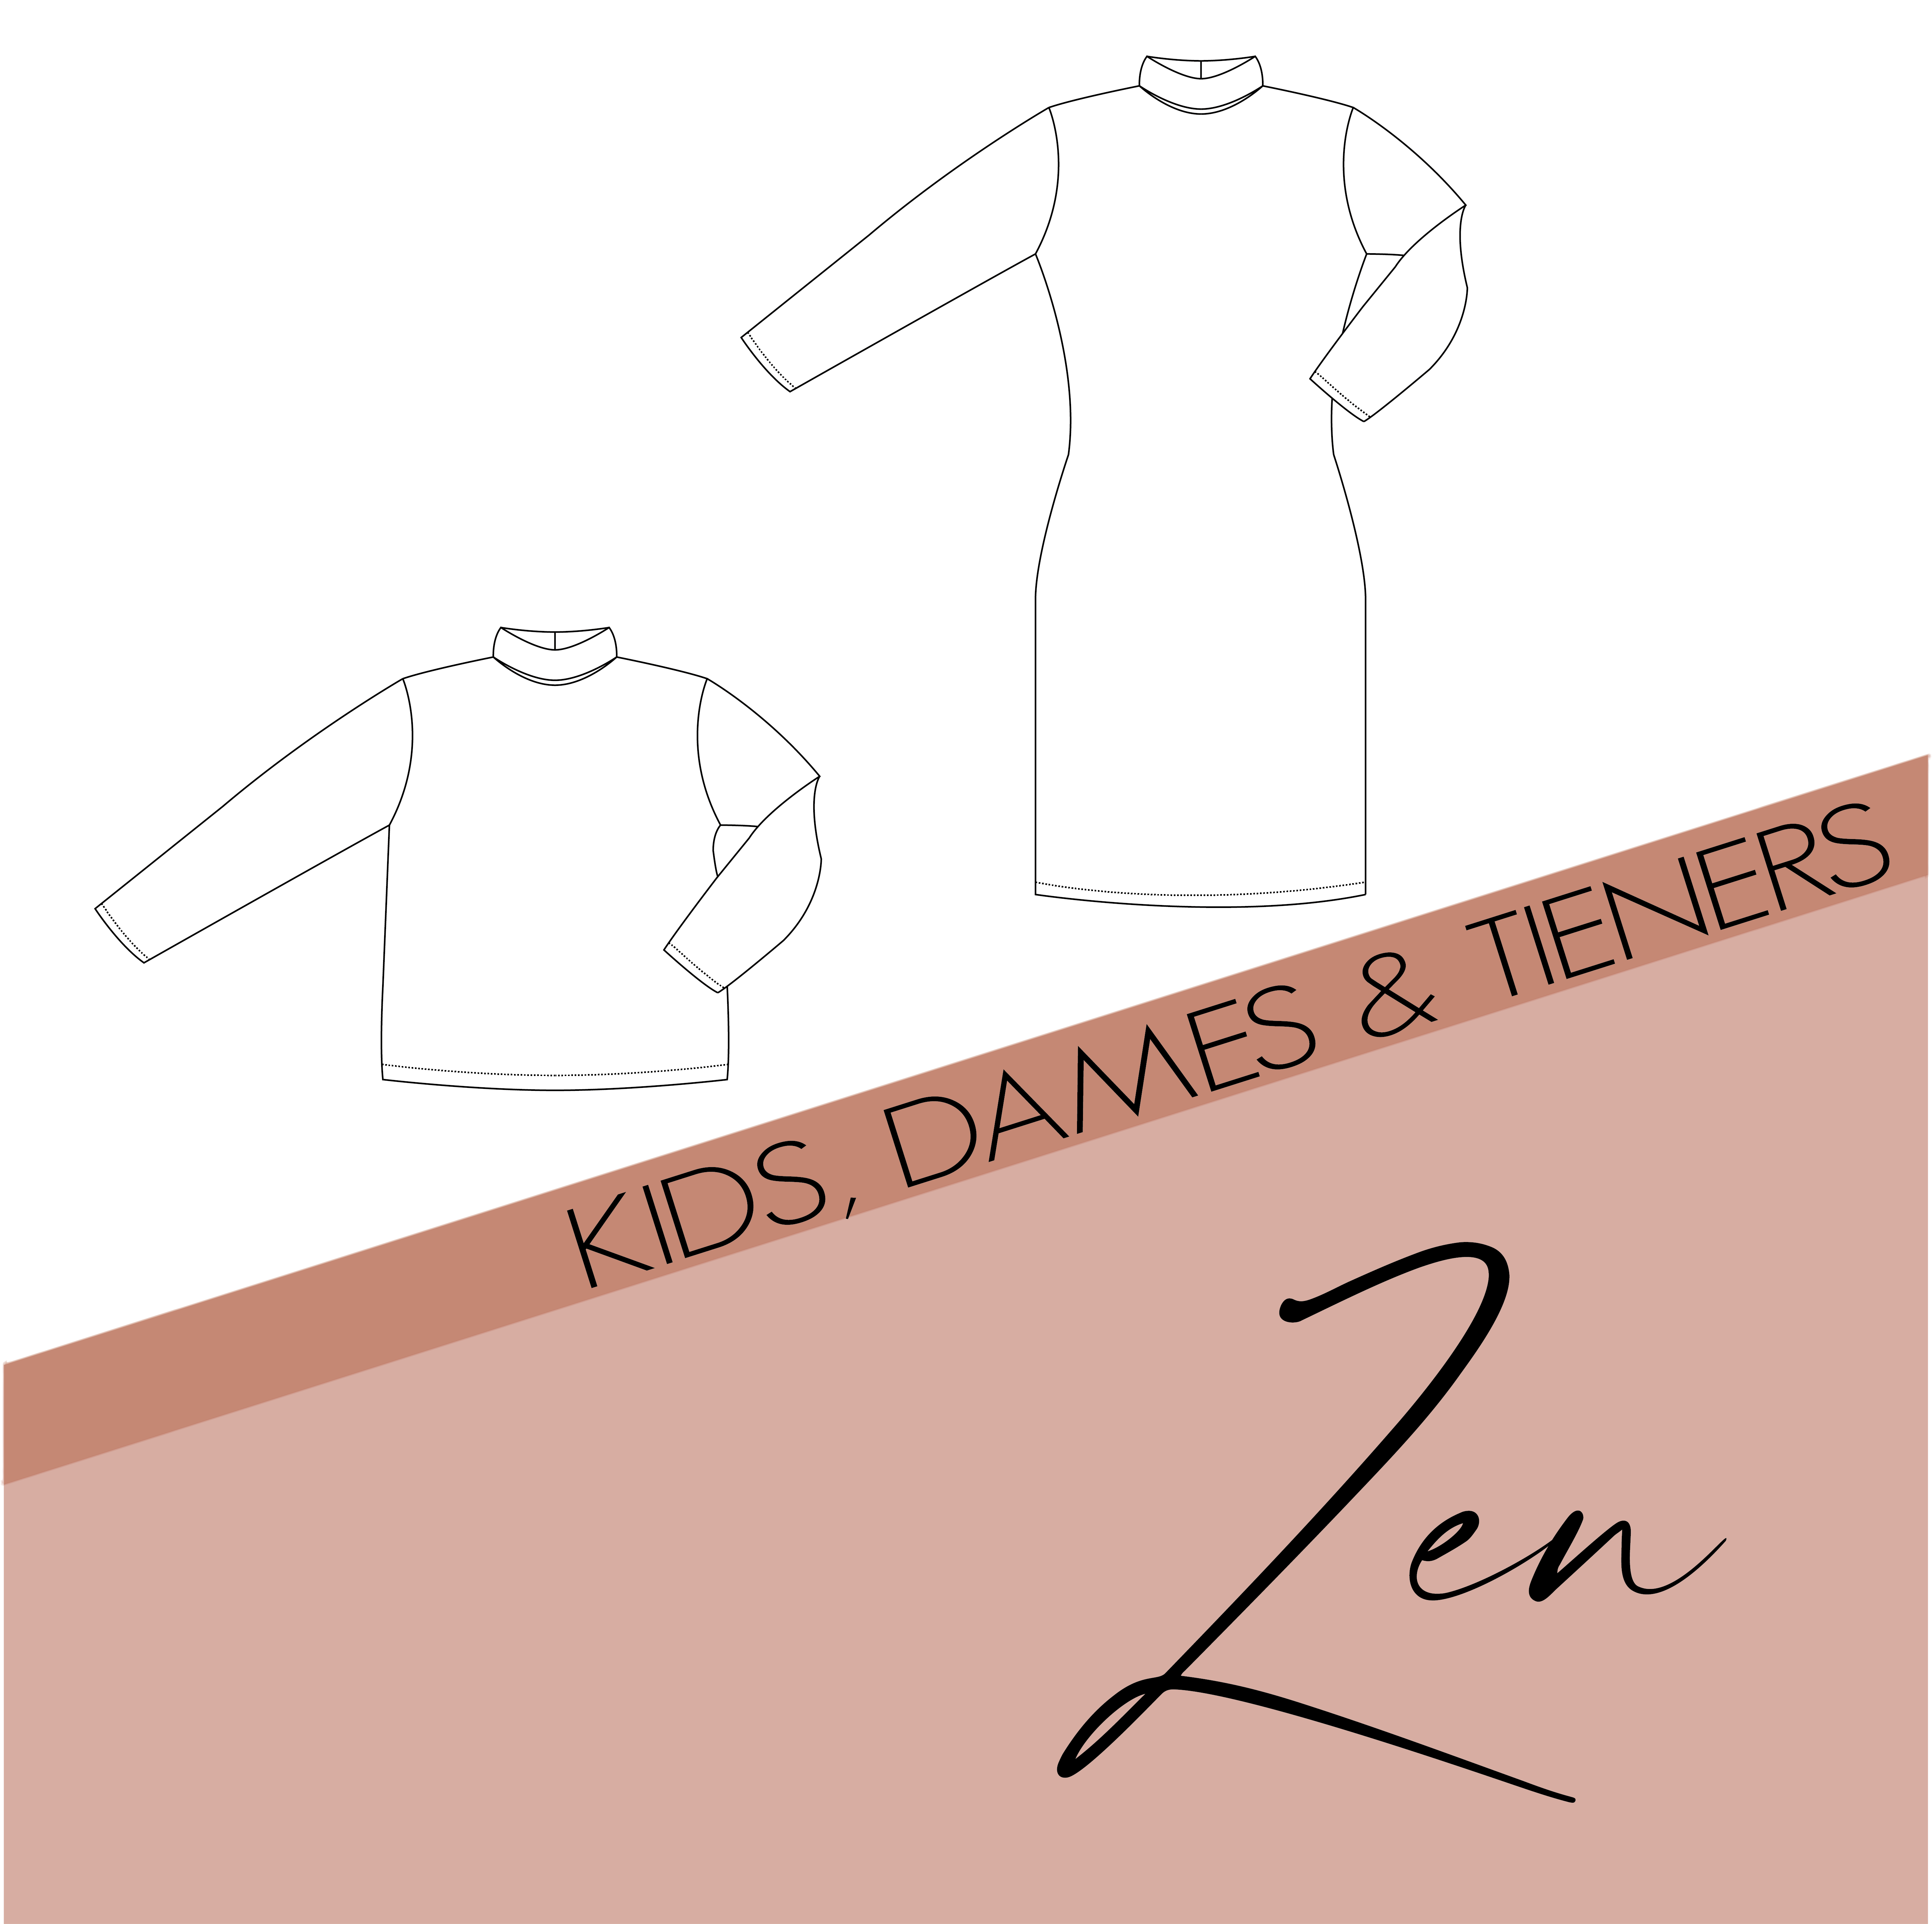 Zen - kids, dames en tieners